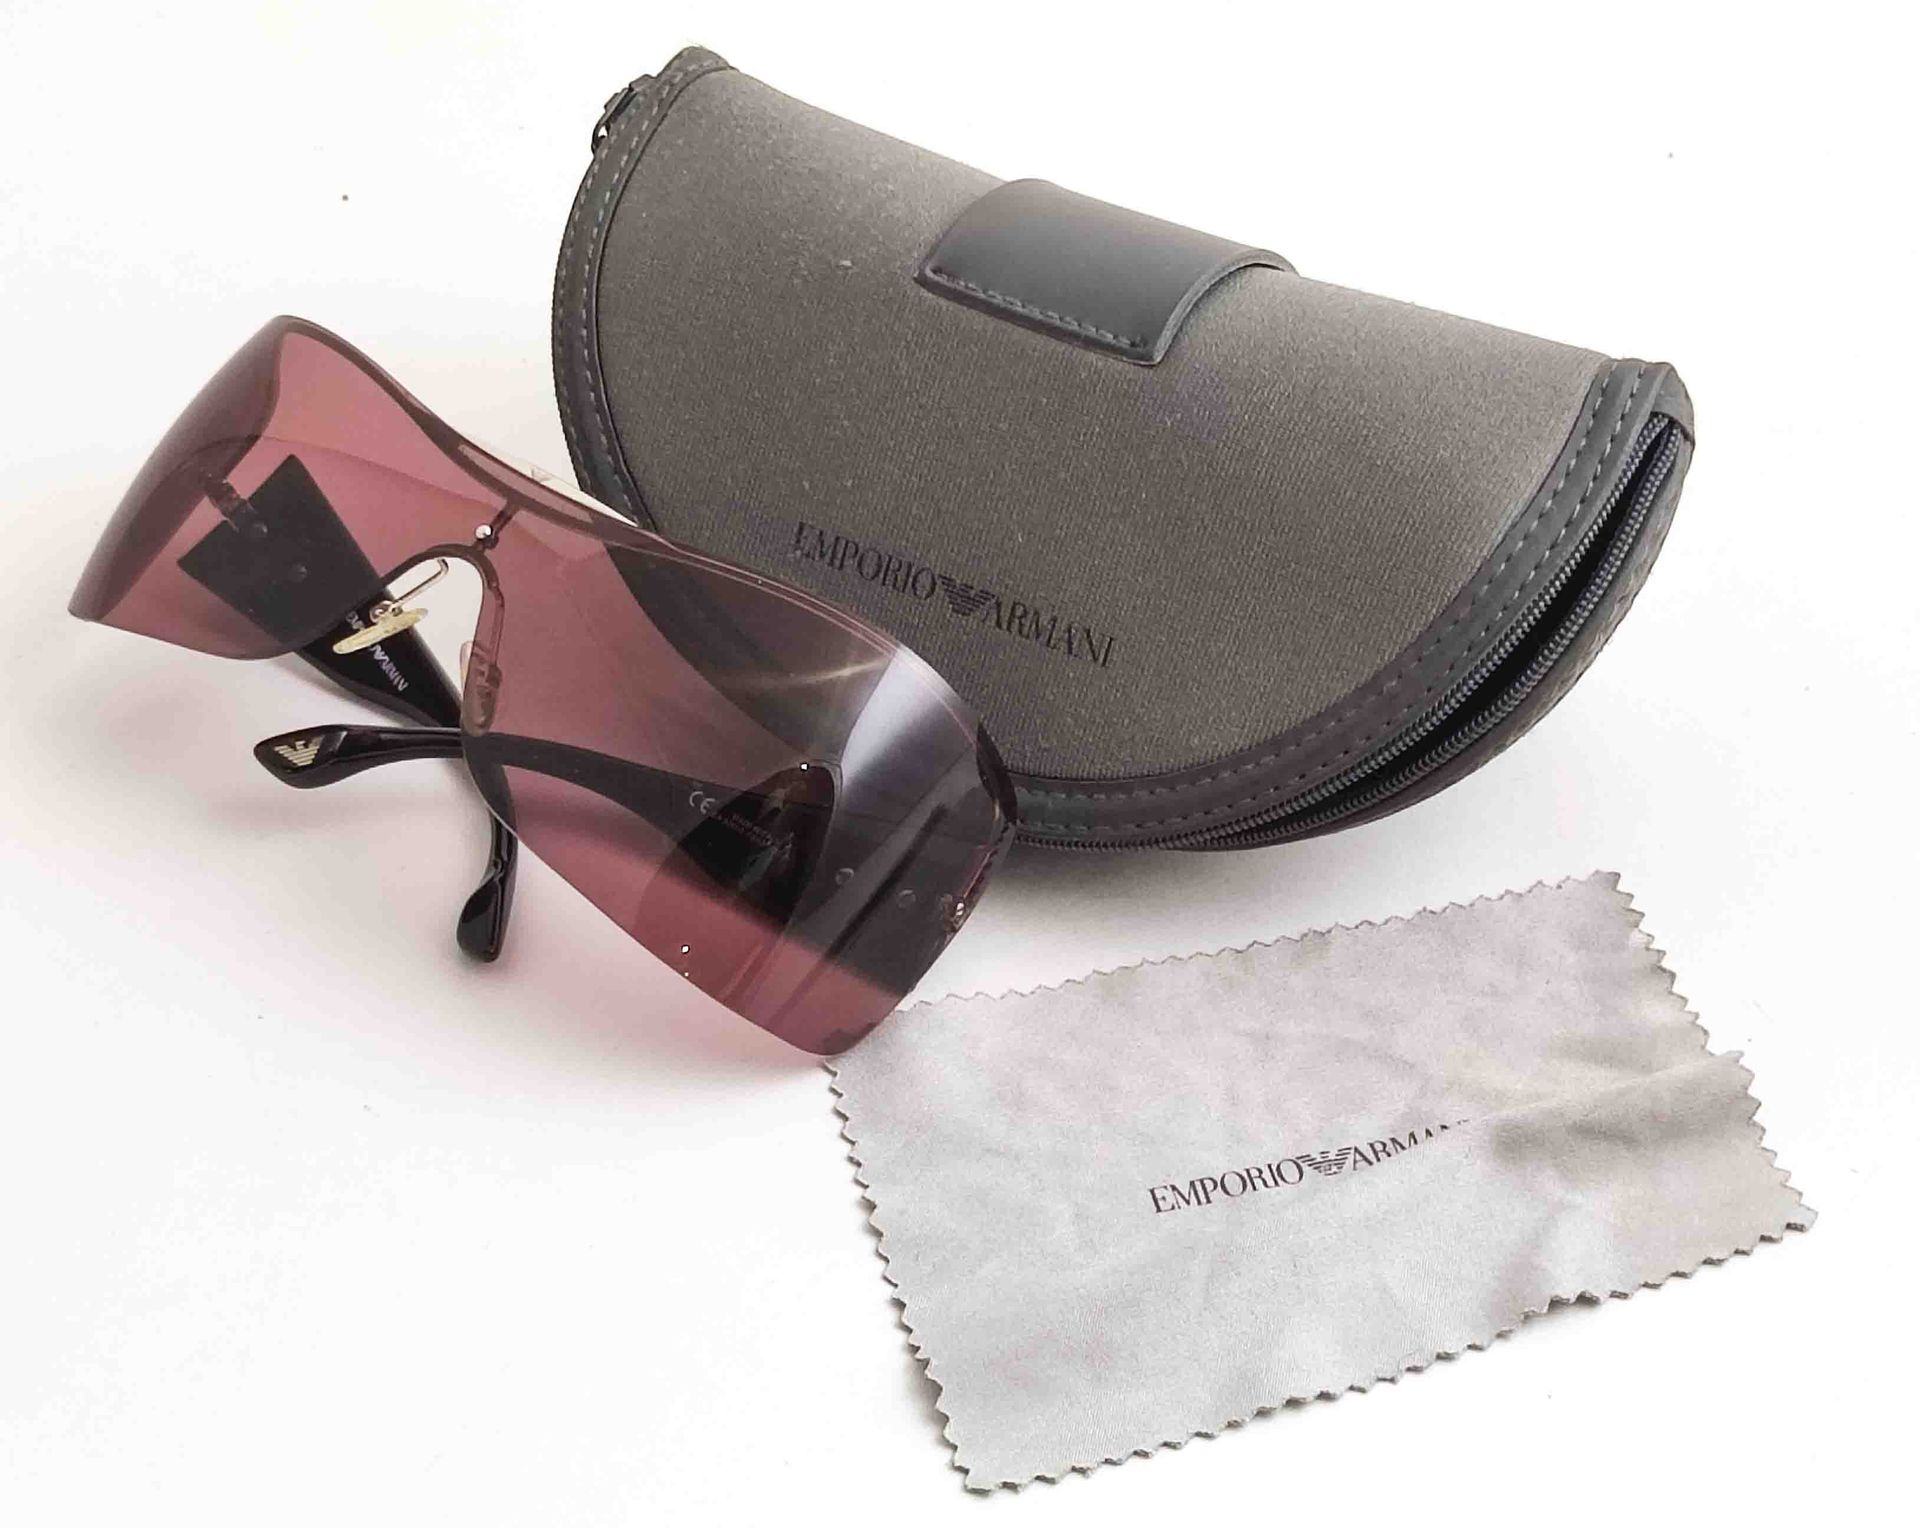 Null Emporio Armani sunglasses design glasses model no. 9218/S in original case,&hellip;